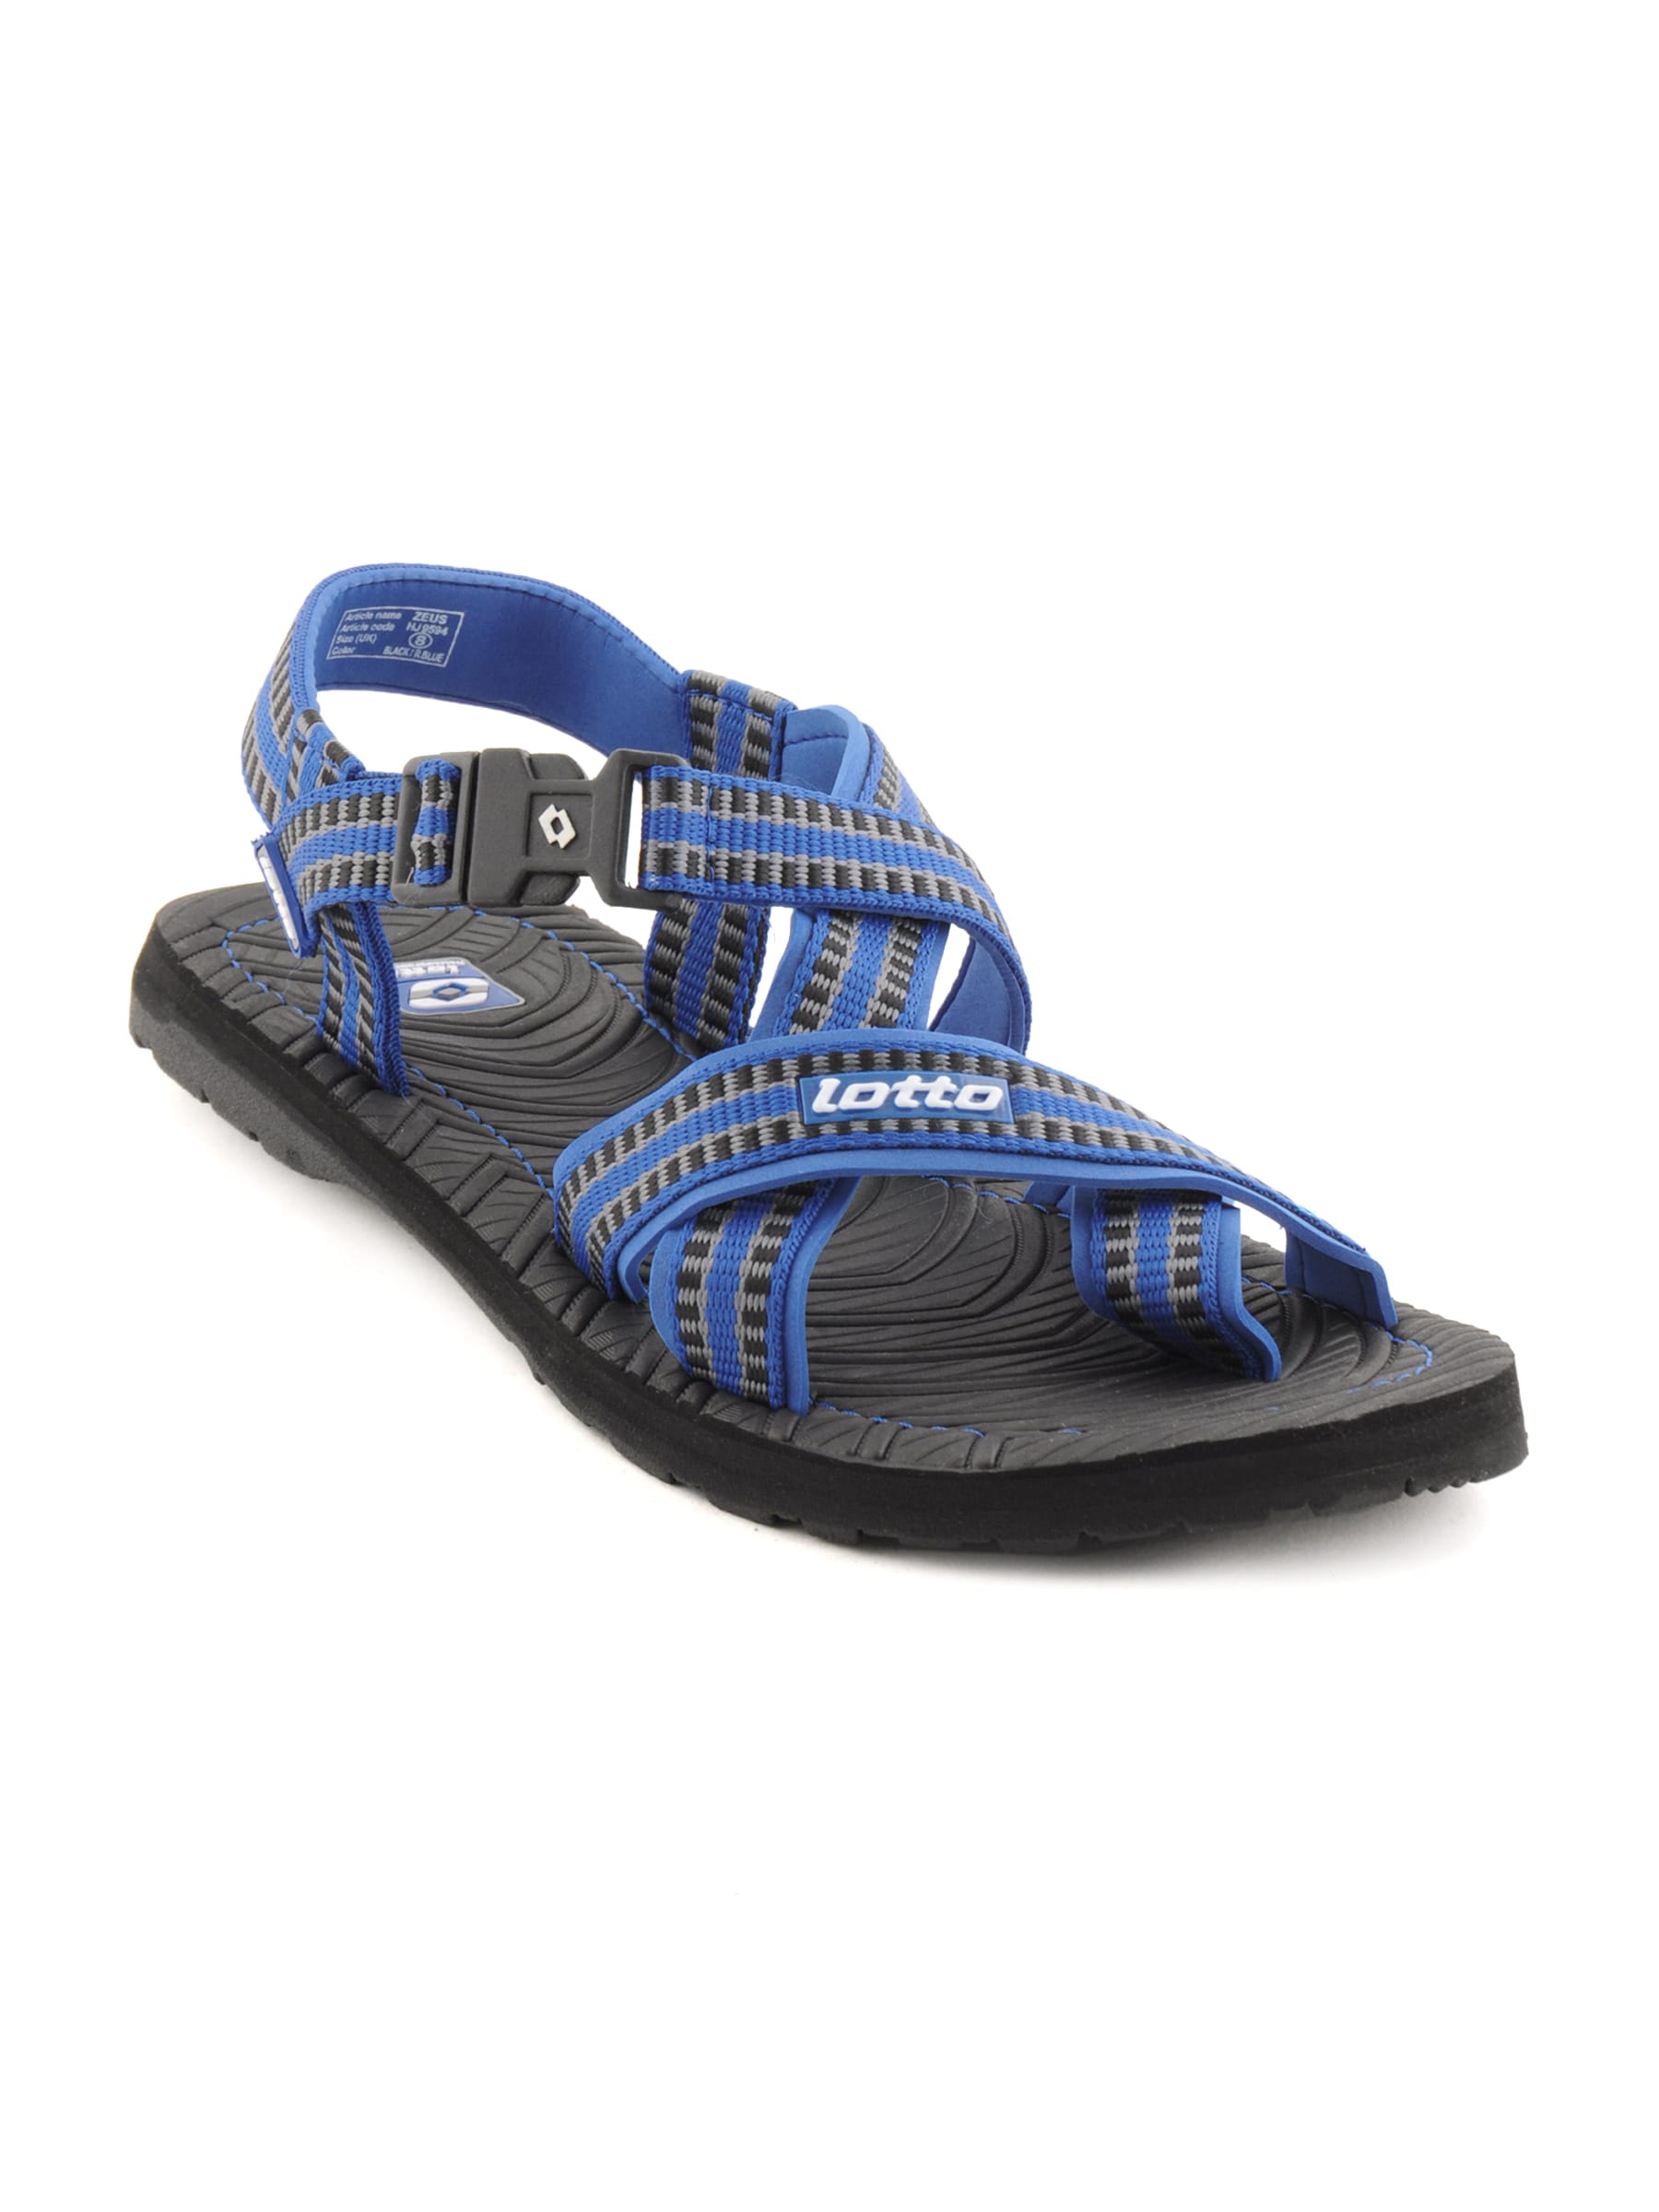 Lotto Men Zeus Blue Sandals